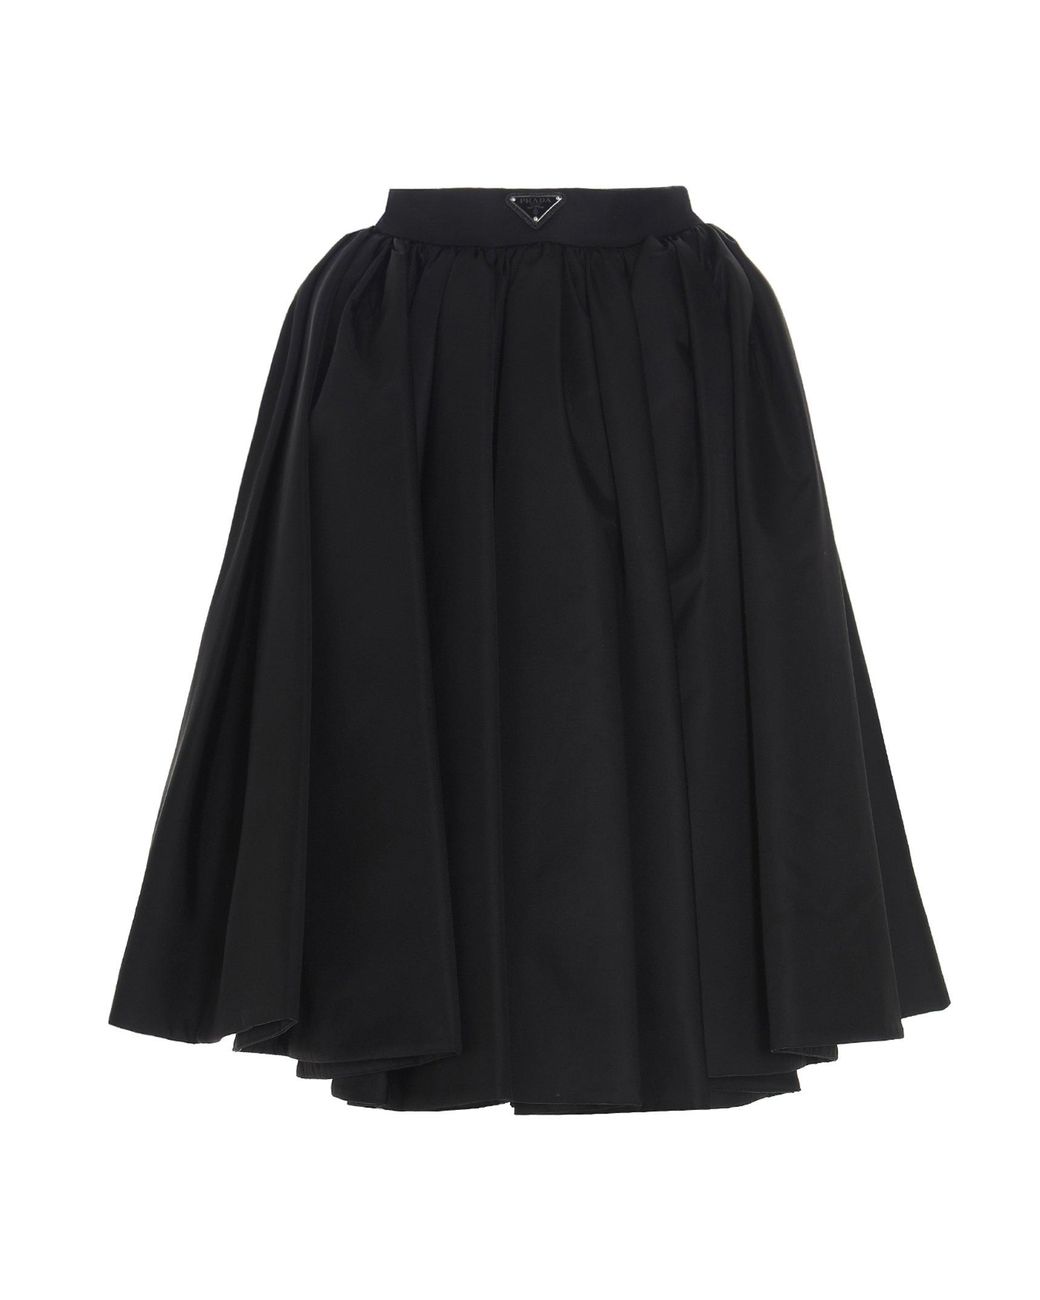 Prada Synthetic Re-nylon Gabardine Wide Gathered Skirt in Black - Lyst